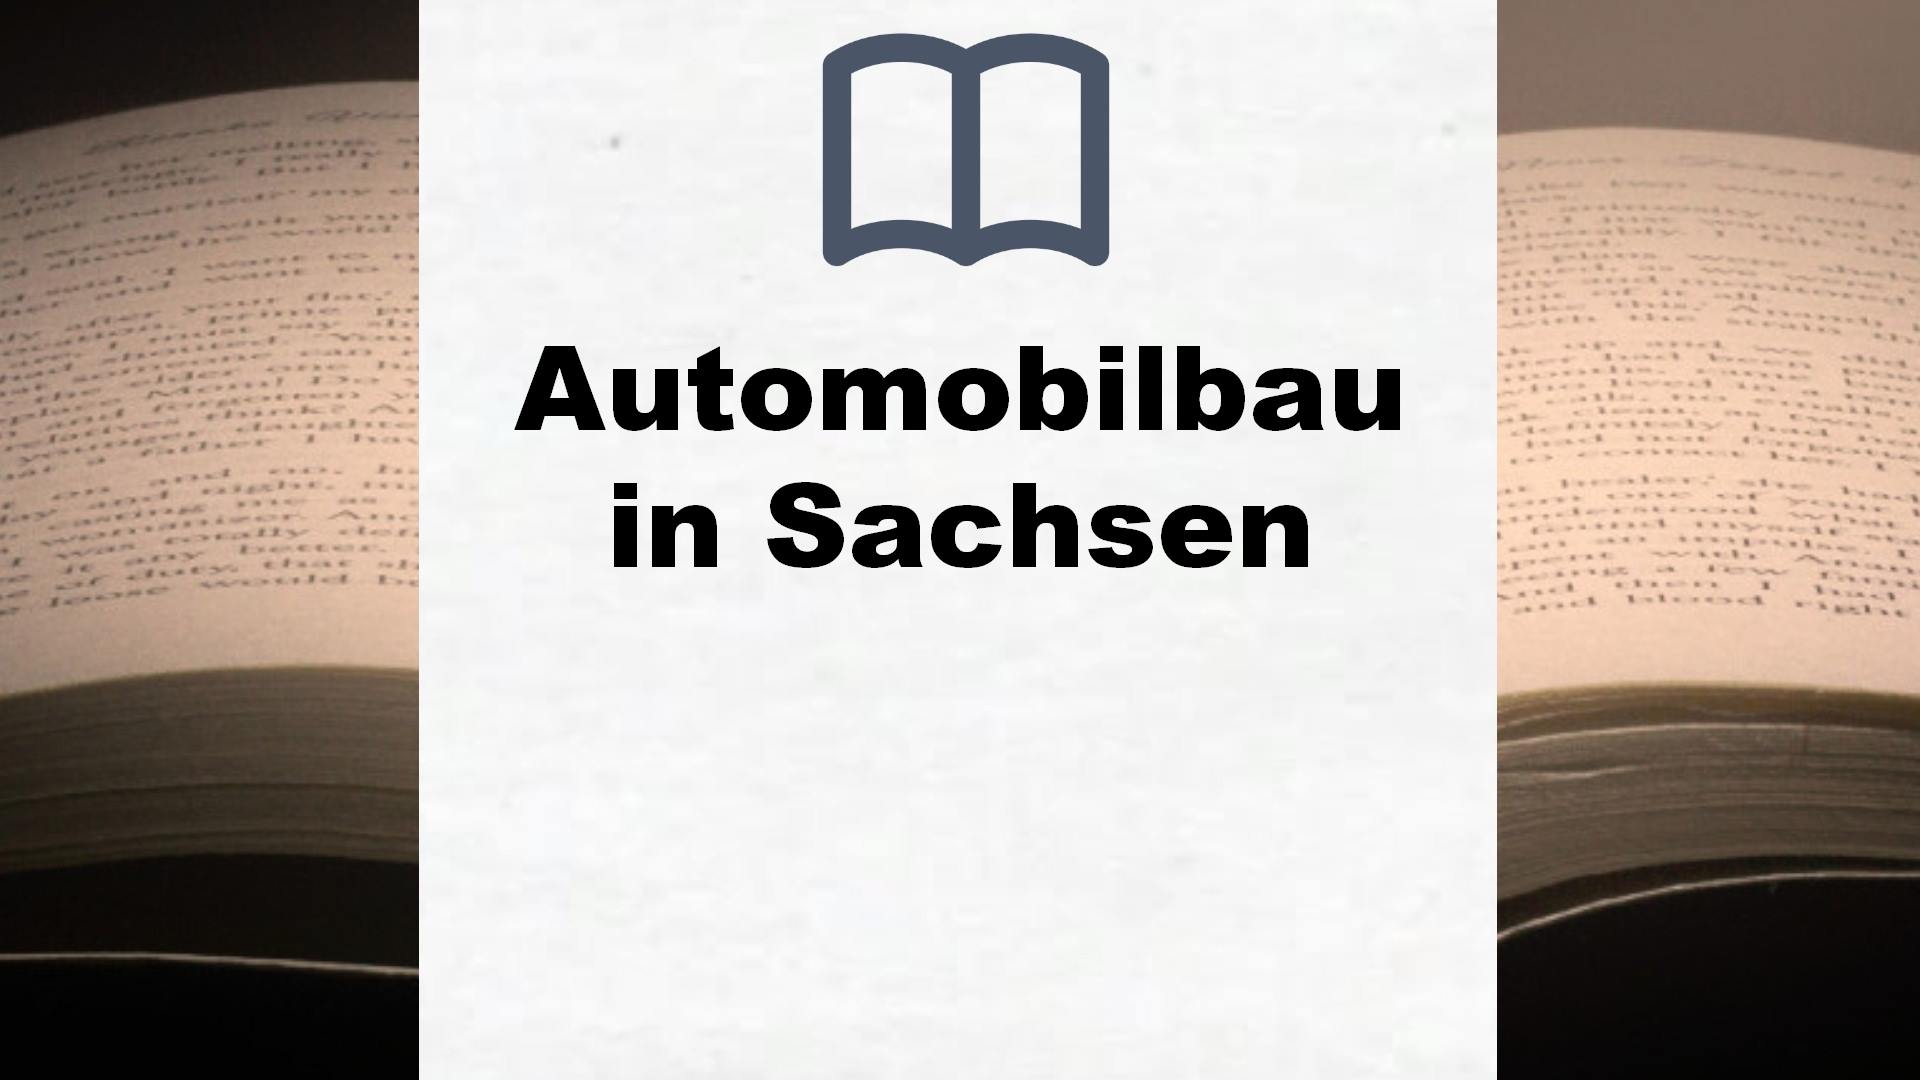 Bücher über Automobilbau in Sachsen